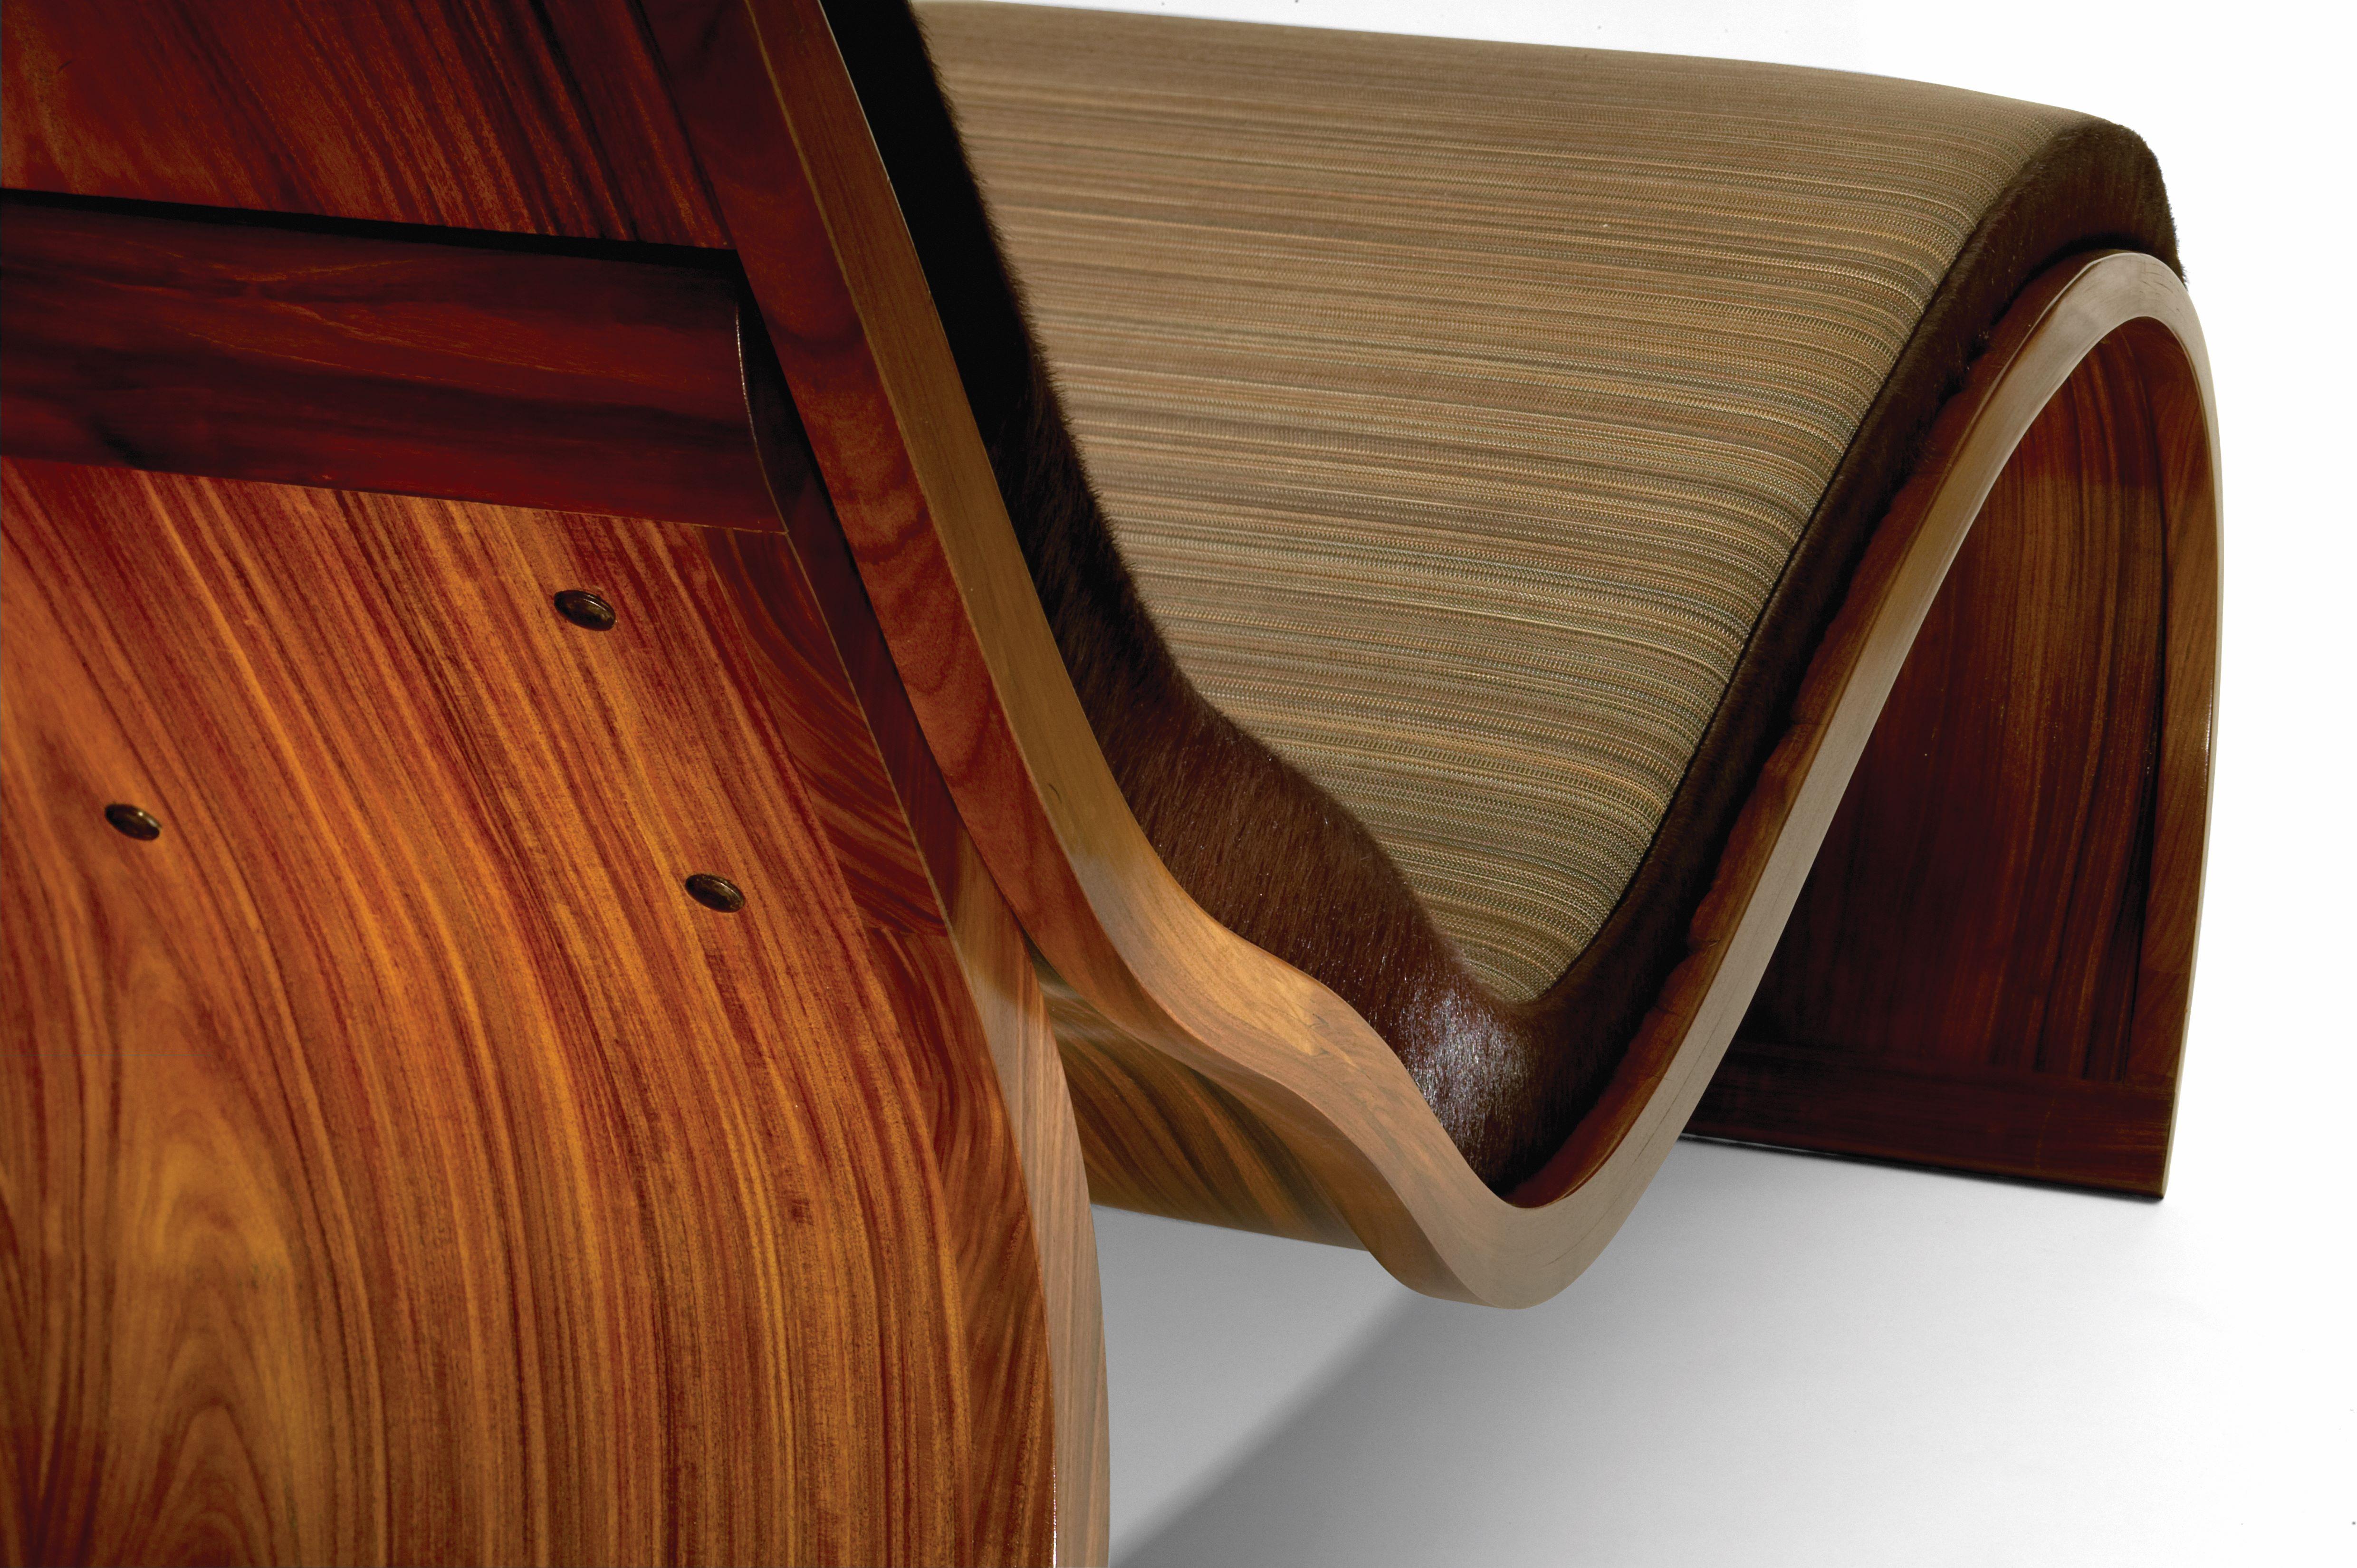 Organische und ergonomisch geformte Chaise Lounge aus exotischem Holz. 
Diese einzigartige und wunderbar bequeme Chaiselongue ist aus bolivianischem Bugholz mit einer Polsterung aus italienischem Rosshaar und Kuhfell gefertigt.